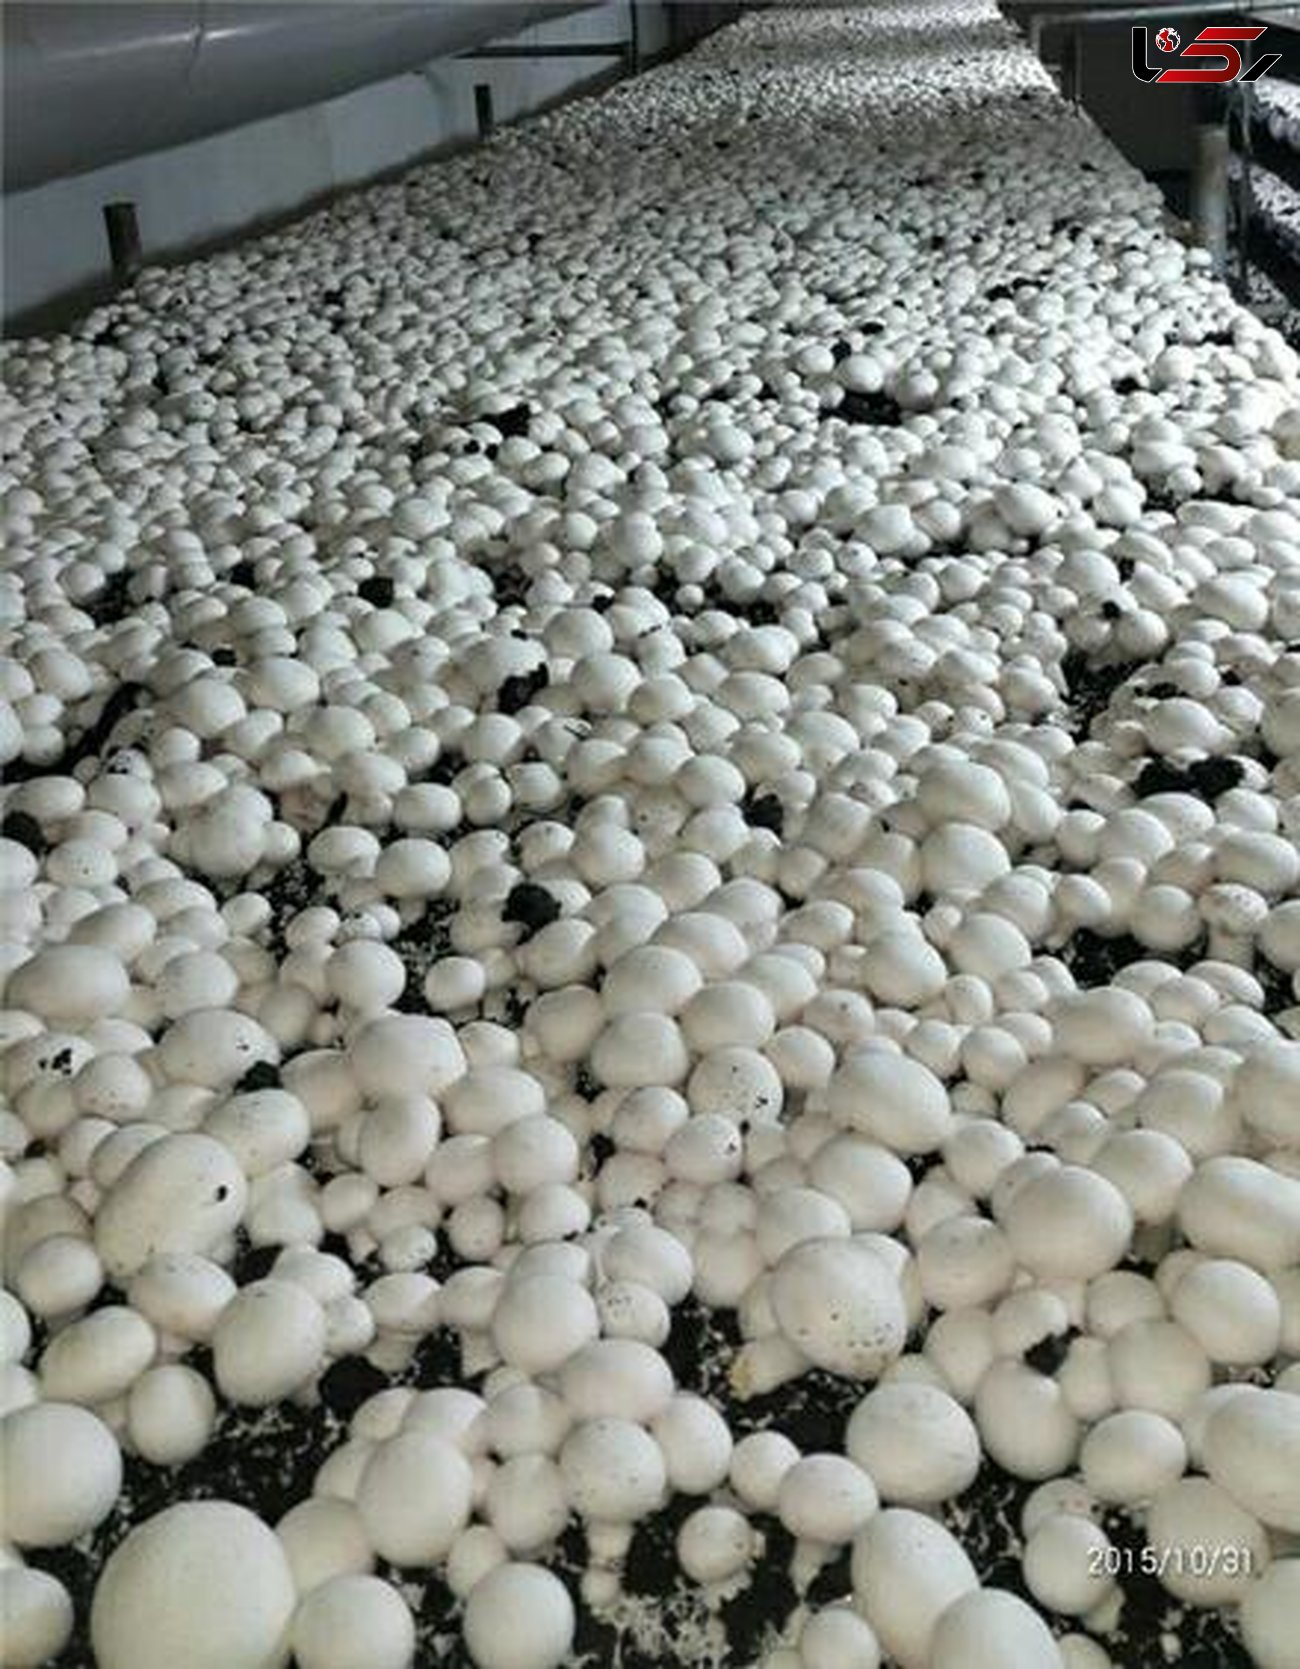 ۹۰۰ تن قارچ خوراکی در قروه با فعالیت ۱۲ واحد صنعتی و خانگی پرورش و تولید می شود